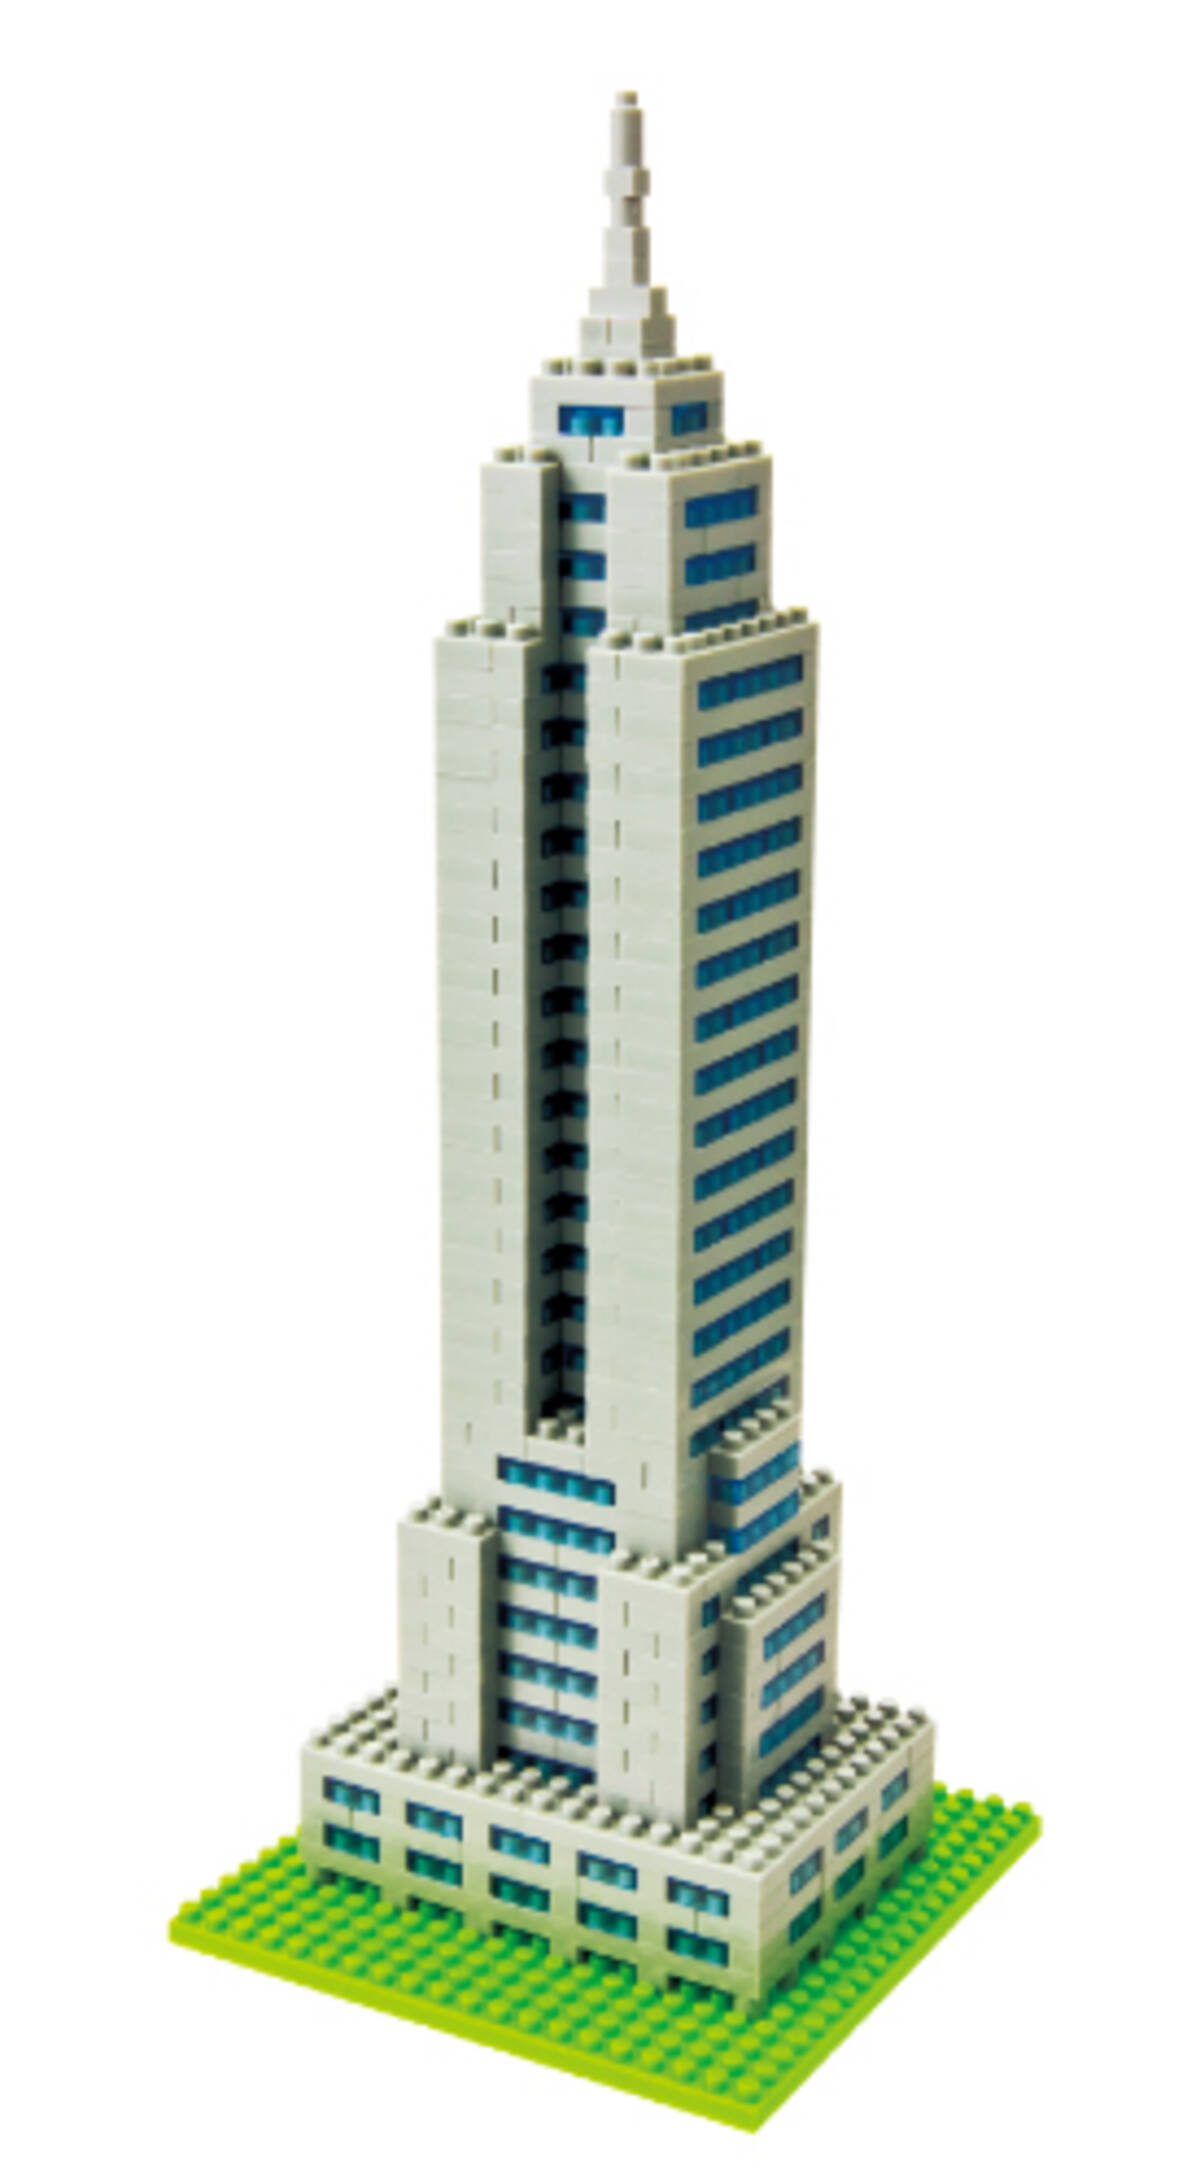 動画レビュー 世界最小級のブロック Nanoblock で世界最大級の超高層ビル エンパイアステートビル をつくってみた 14年2月18日 エキサイトニュース